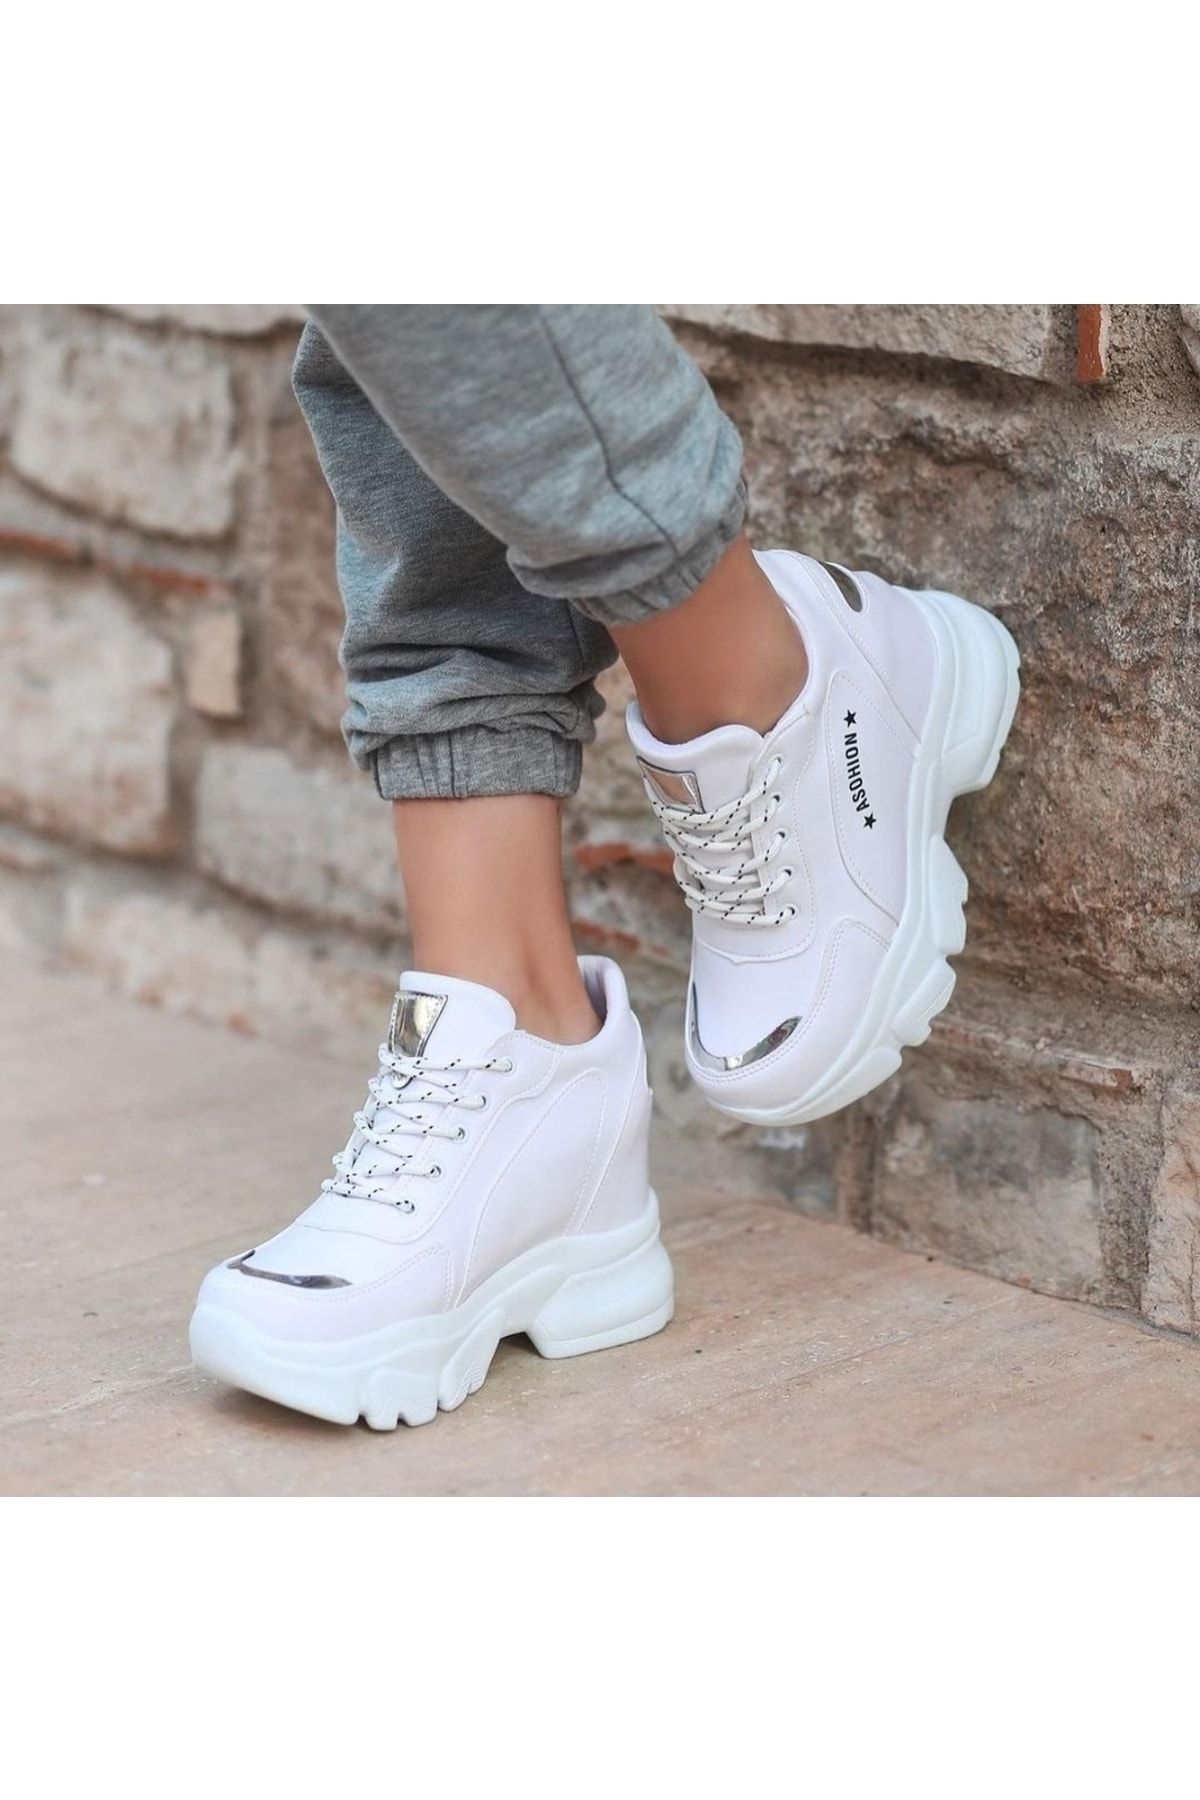 Afilli Kadın Beyaz Gizli Yüksek Taban Dolgu Platform Topuk Günlük Gümüş Parlak Sneaker Spor Ayakkabı